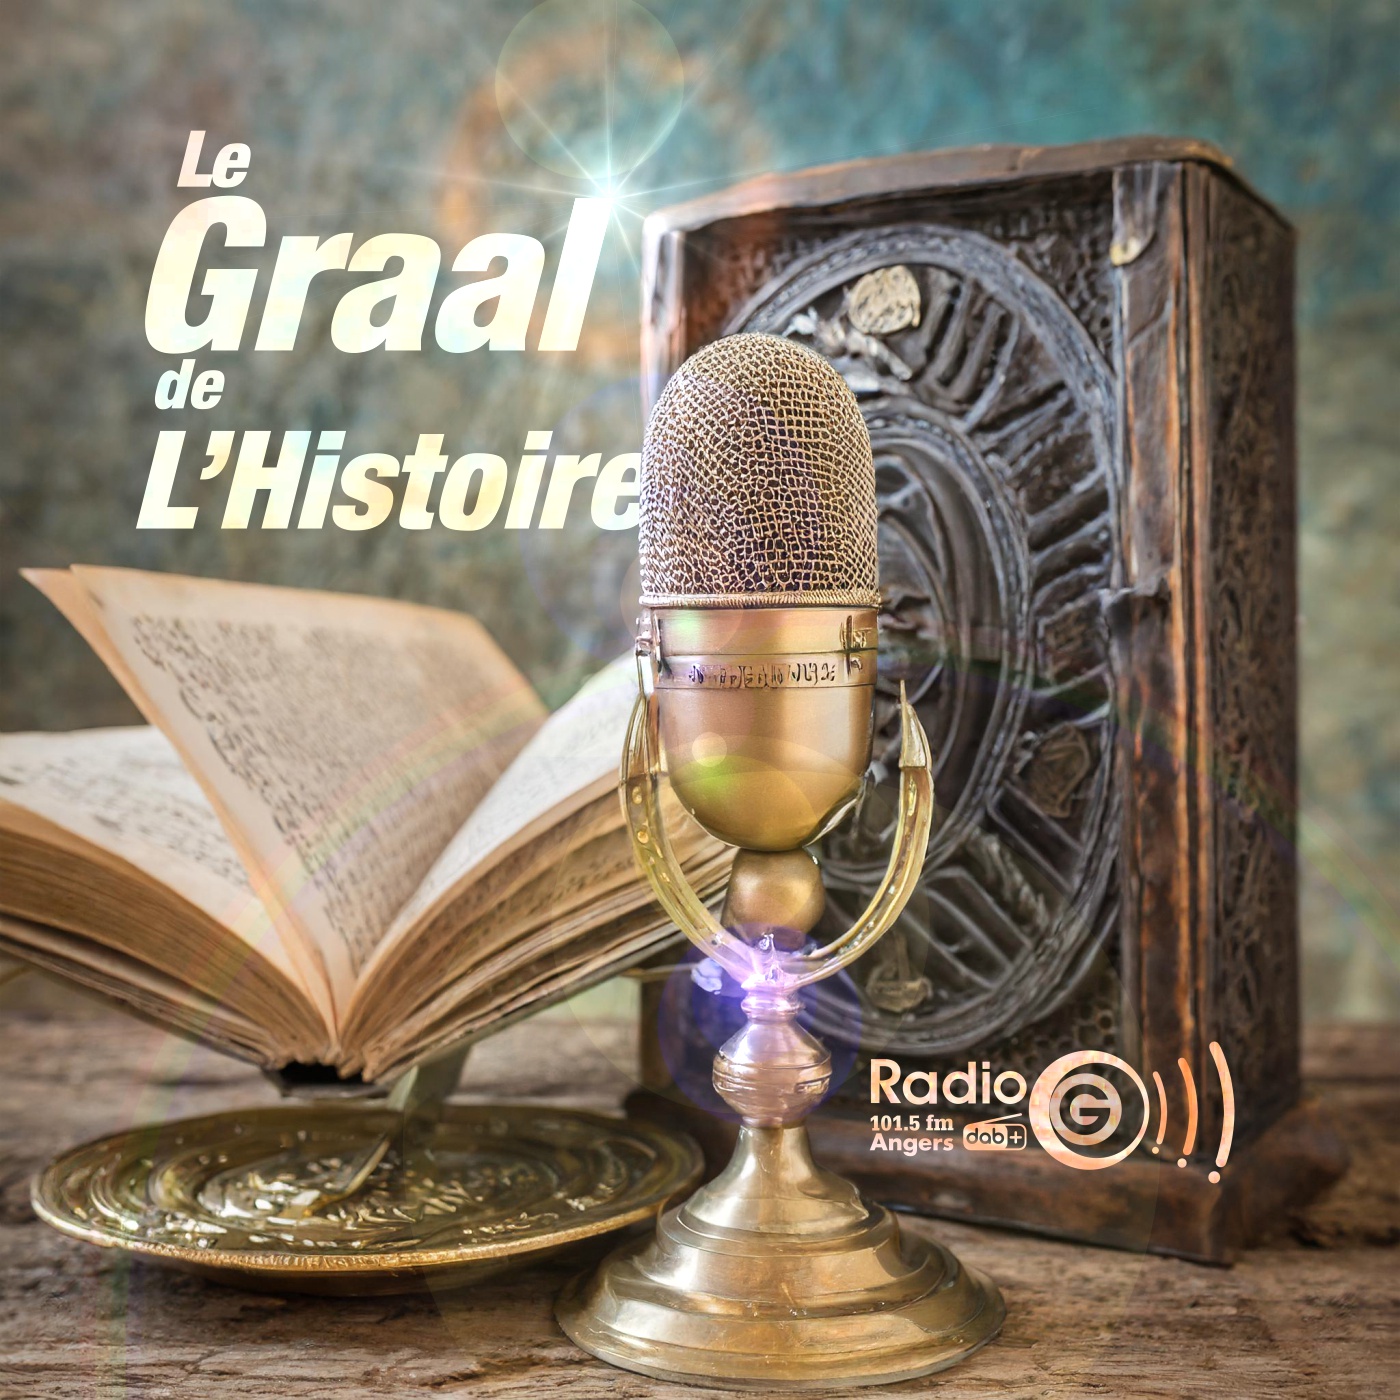 Graalv3 7 Papes Le Graal de l'Histoire, un podcast avec des voix et des musiques en intelligence artificielles Graalv3 7 Papes